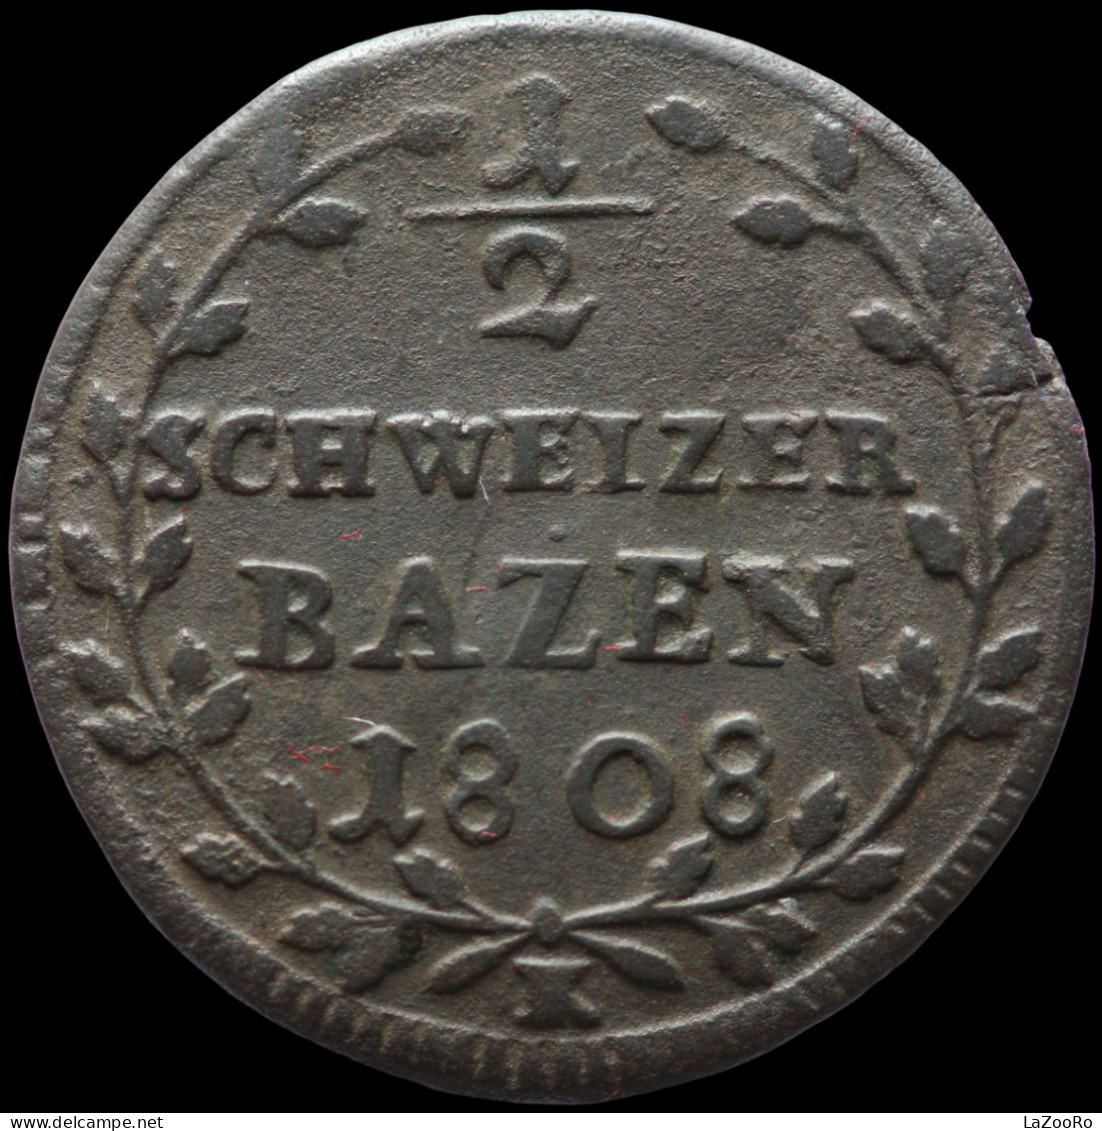 LaZooRo: Switzerland SAINT GALL 1/2 Batzen 1808 VF - Silver - Kantonale Munten